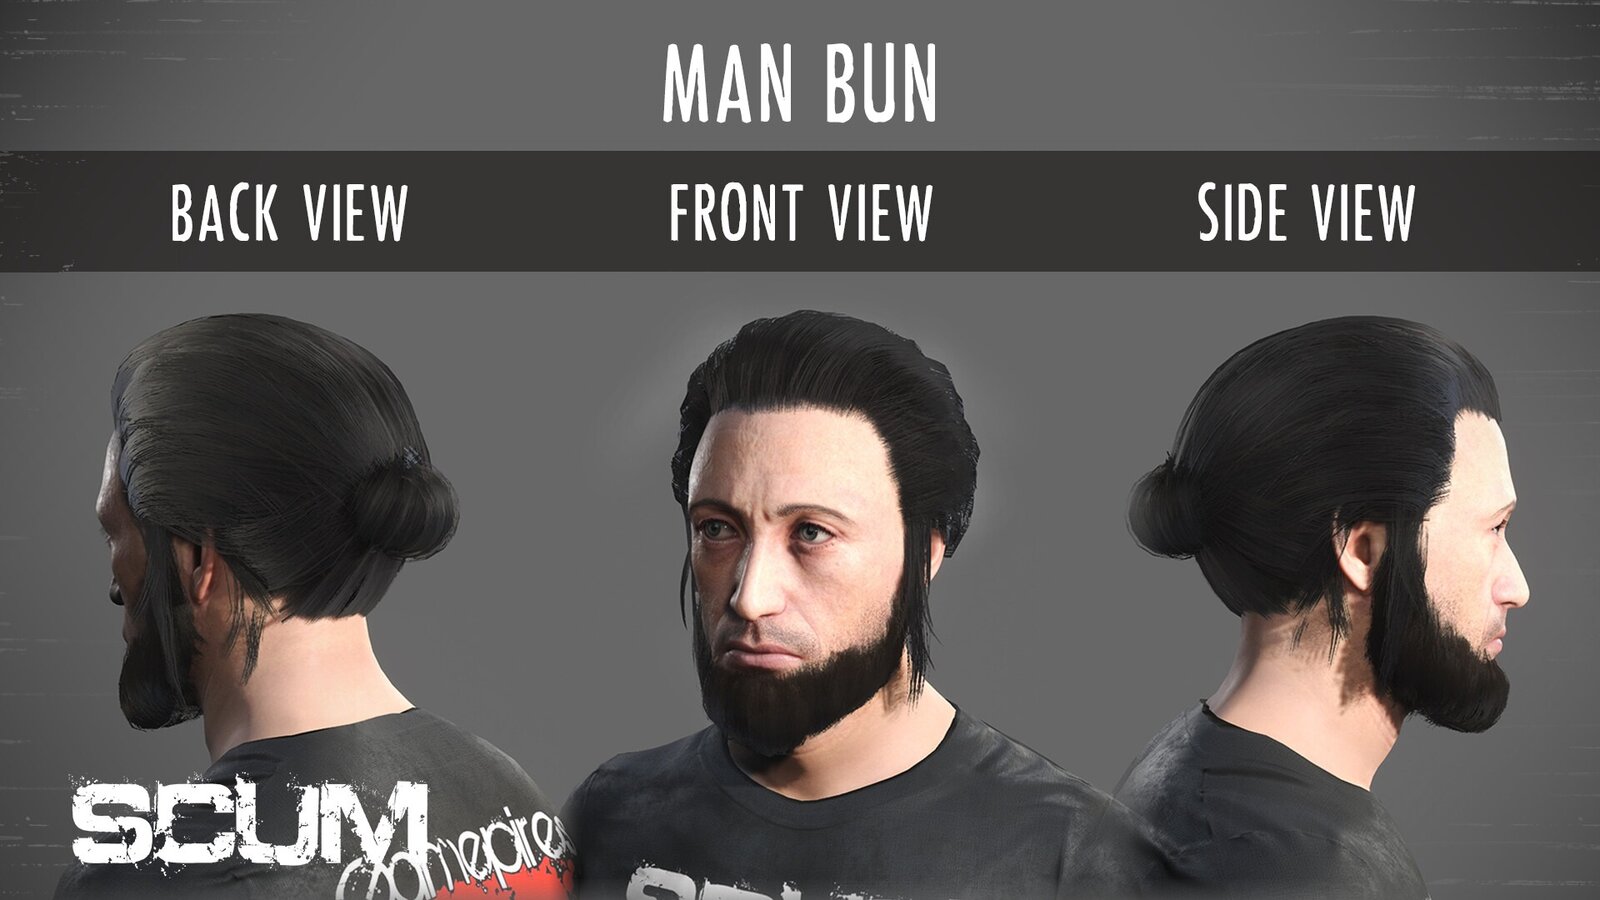 SCUM: Male Hair Pack